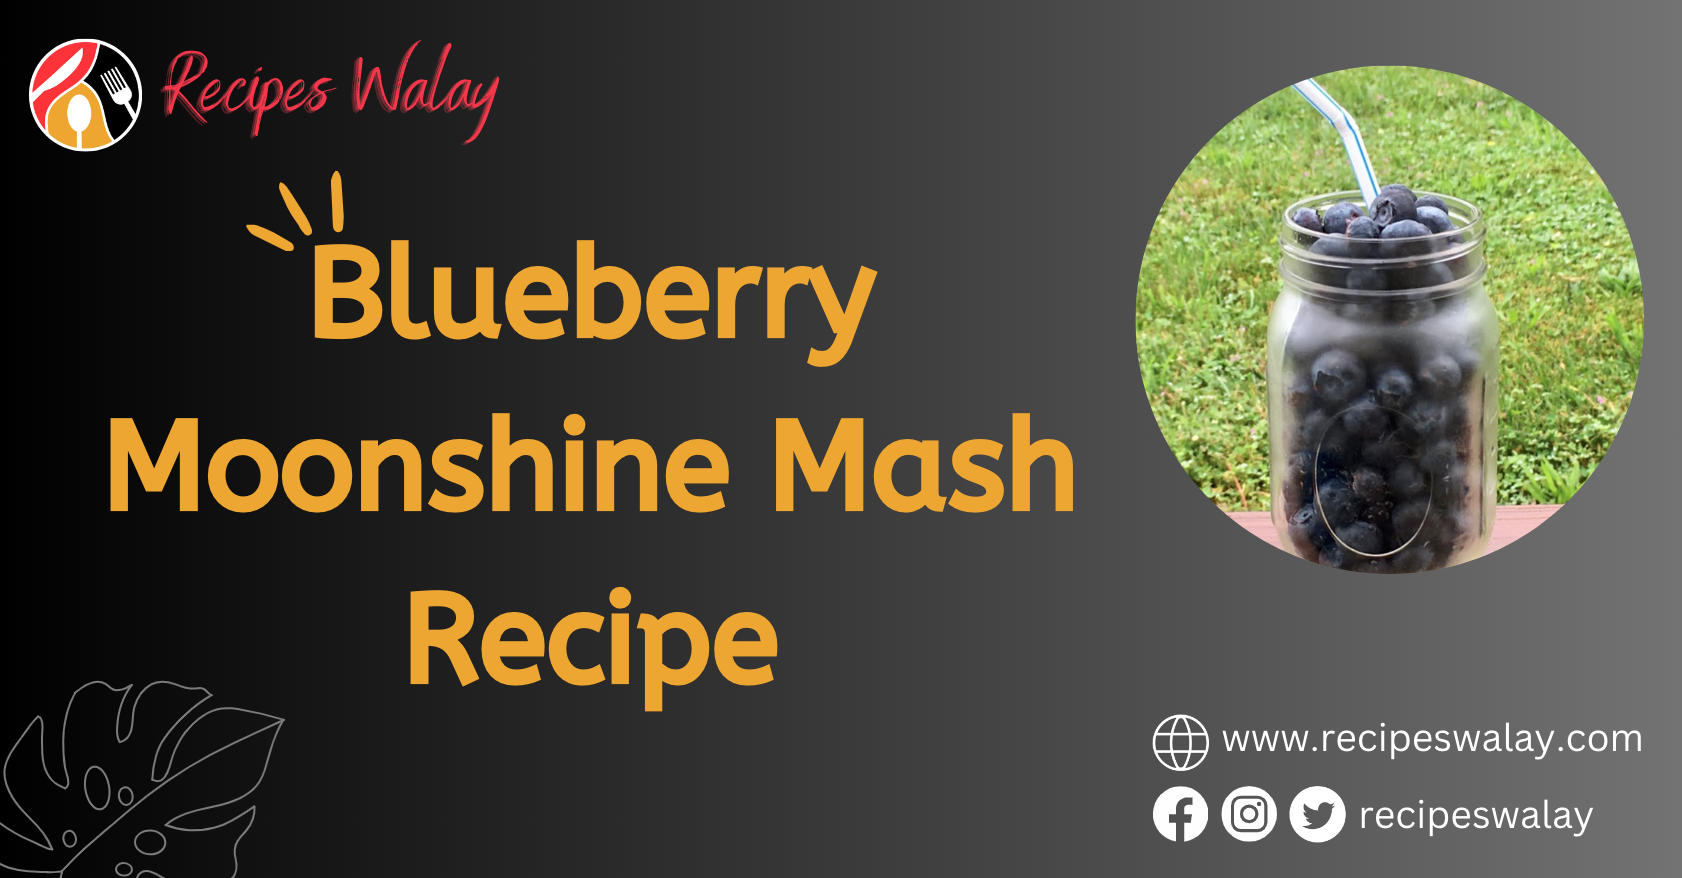 Blueberry Moonshine Mash Recipe